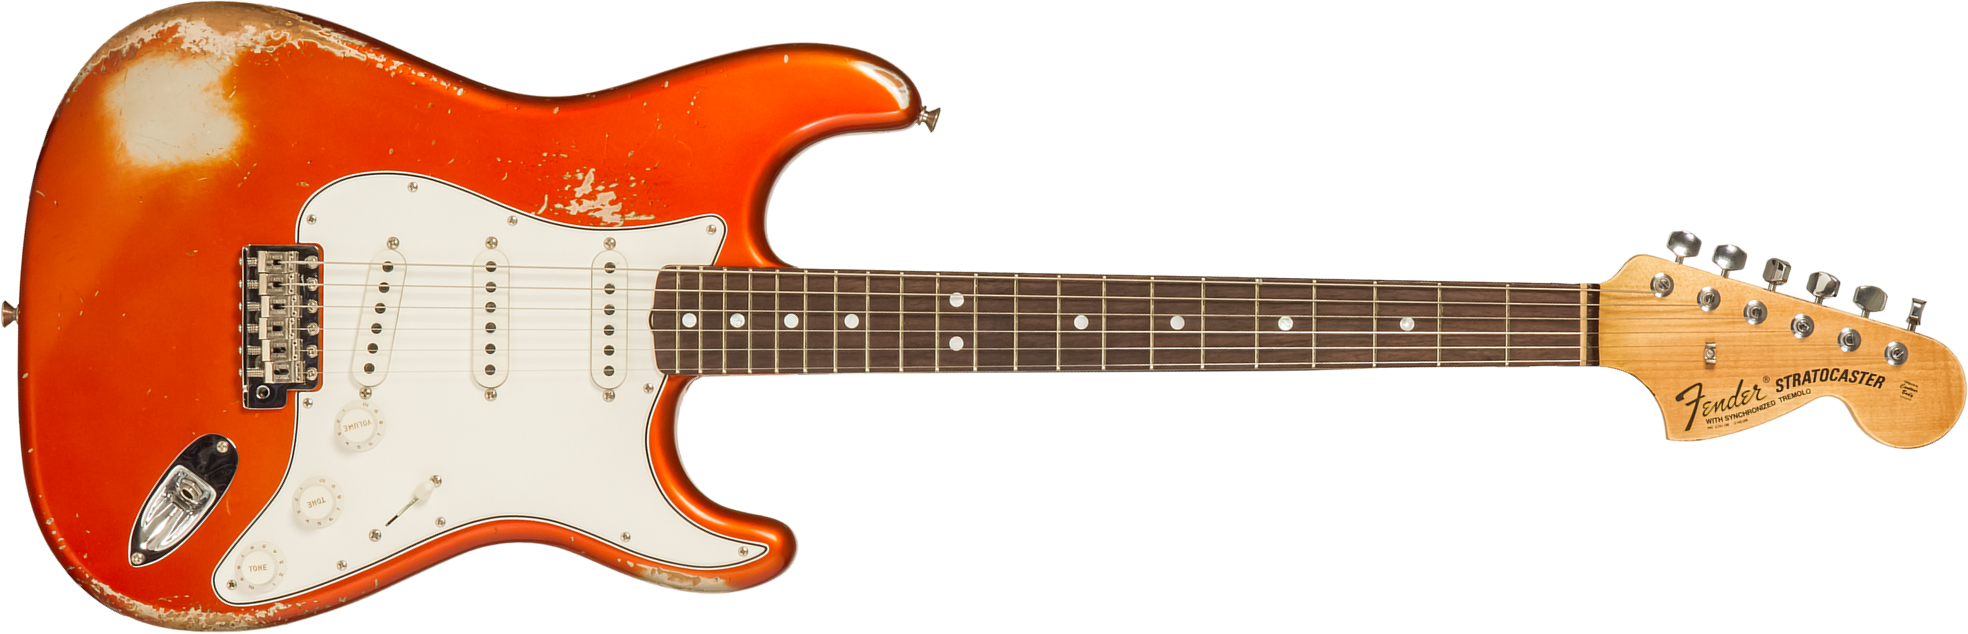 Fender Custom Shop Strat 1969 3s Trem Rw #r132166 - Heavy Relic Candy Tangerine - Guitare Électrique Forme Str - Main picture